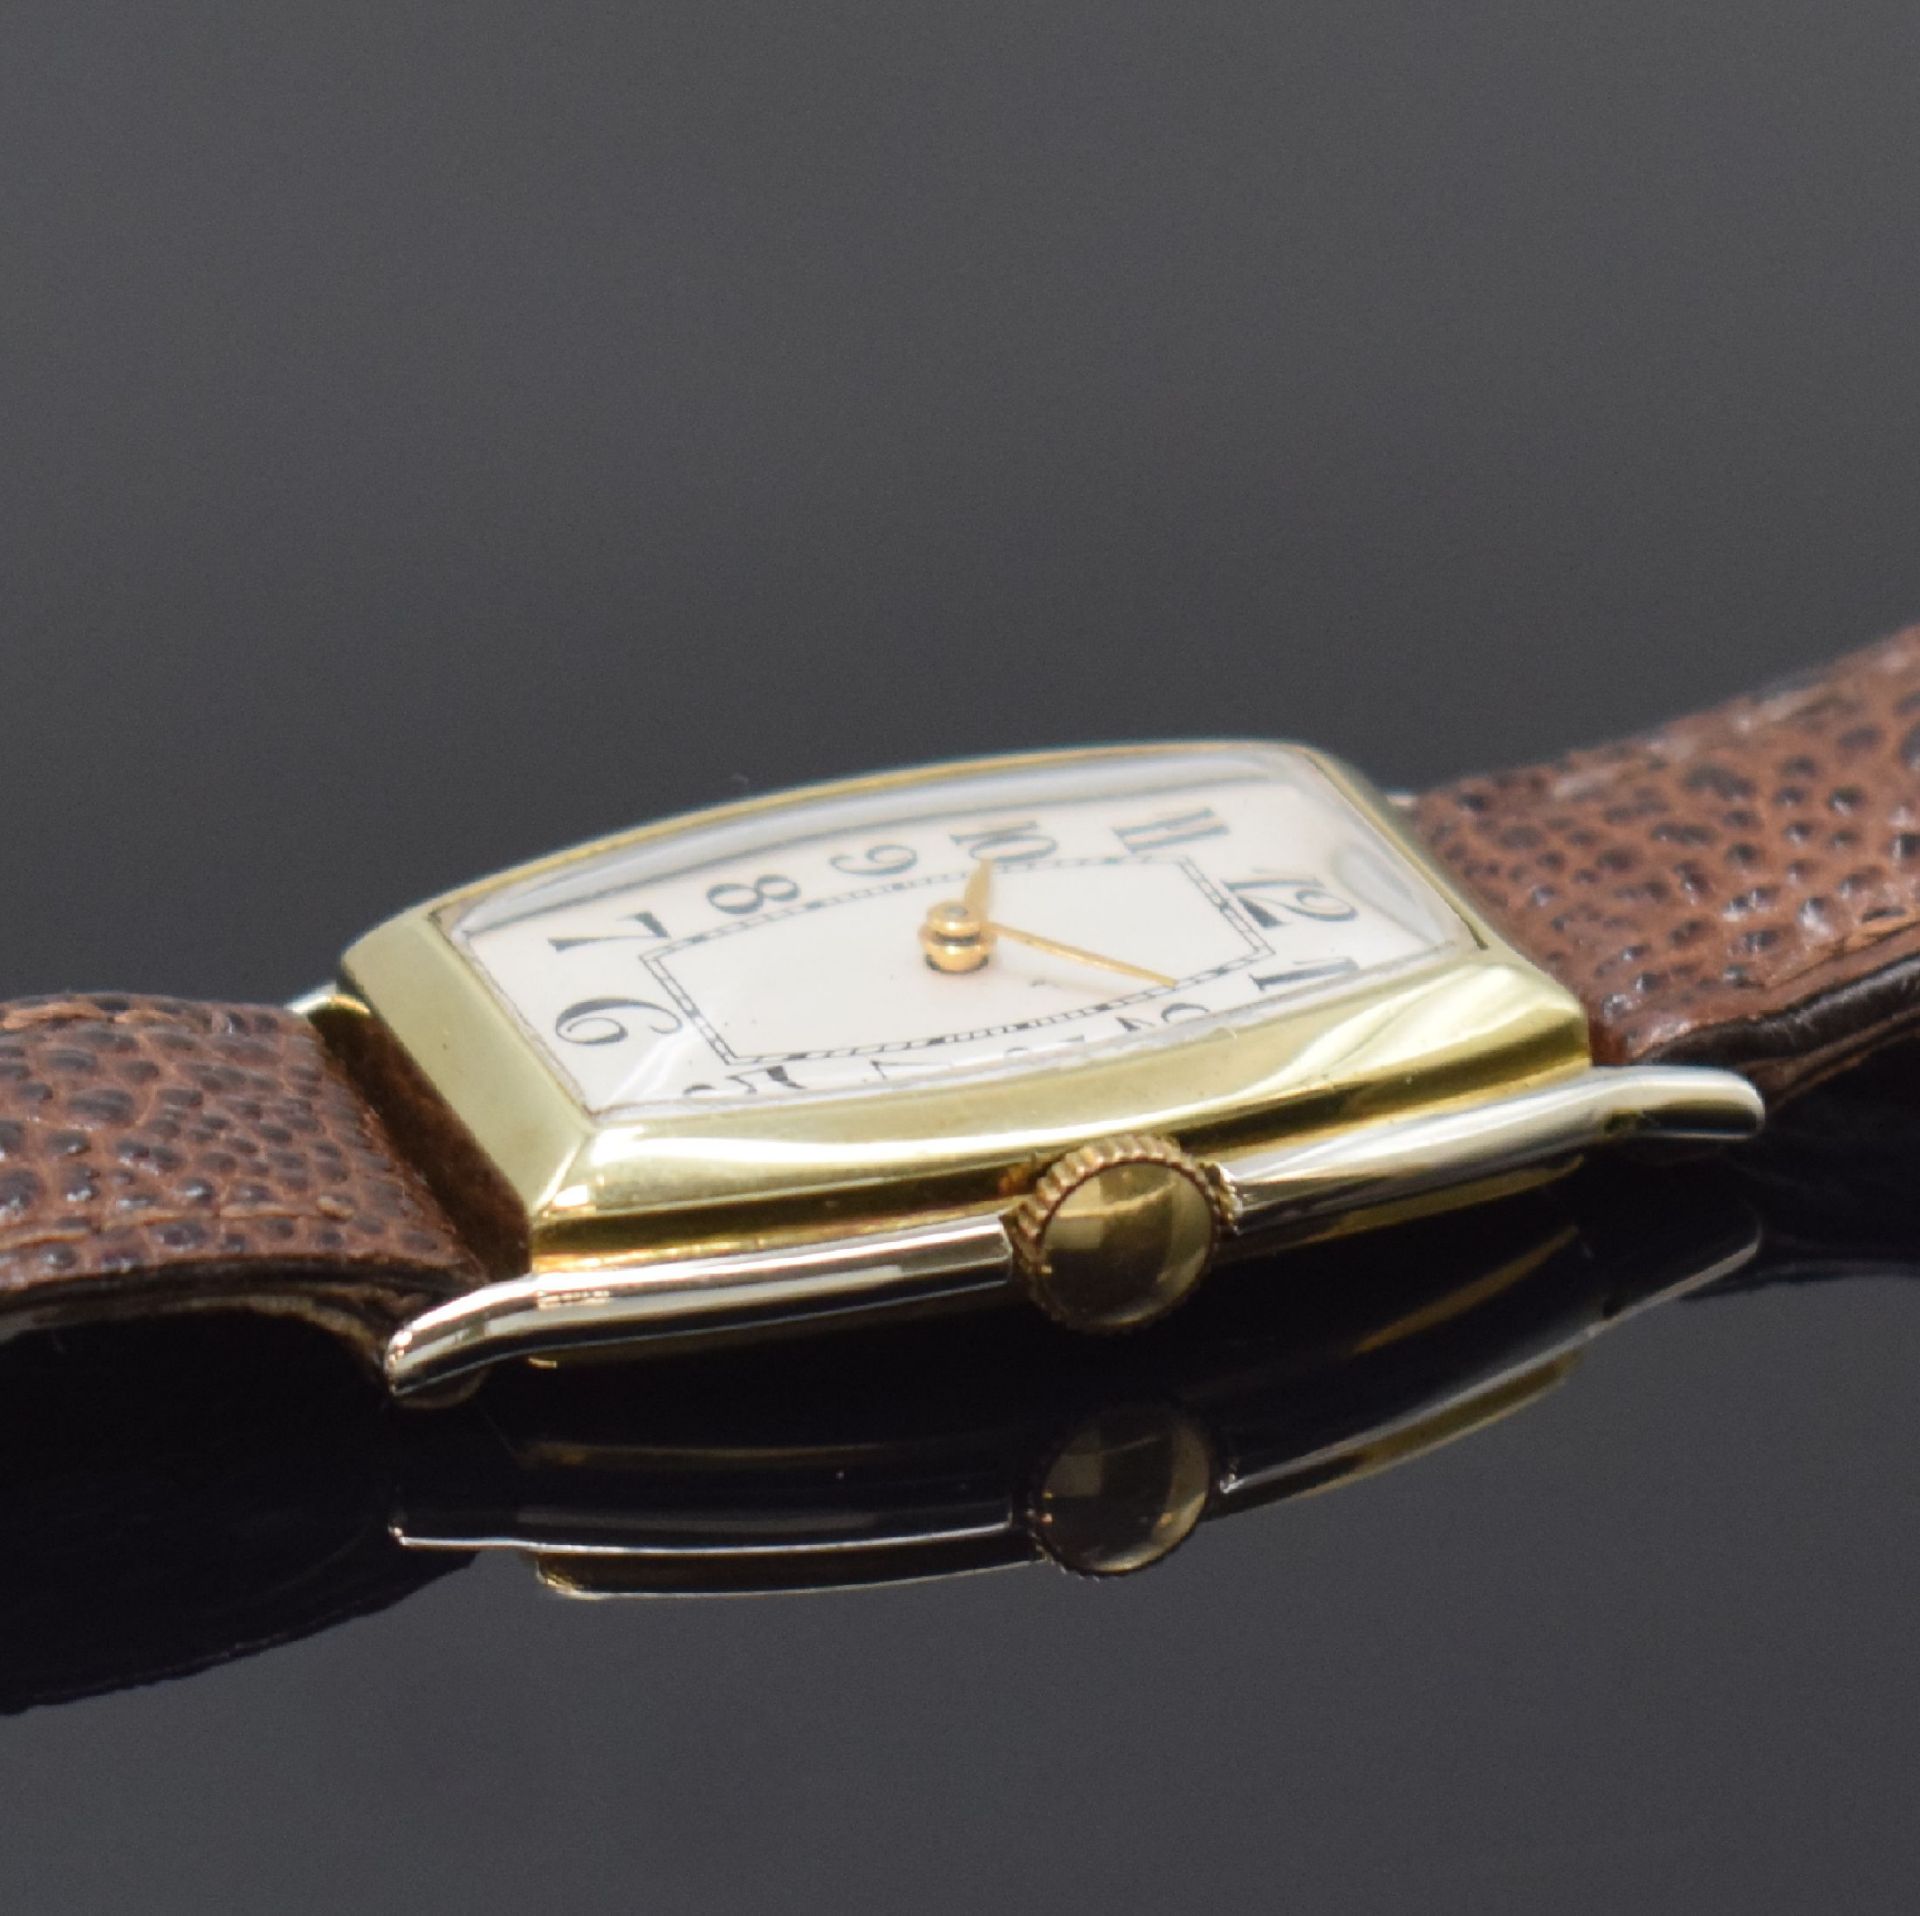 ORMONT WATCH CO Armbanduhr in 14k WG/GG,  Schweiz / USA um - Bild 3 aus 6